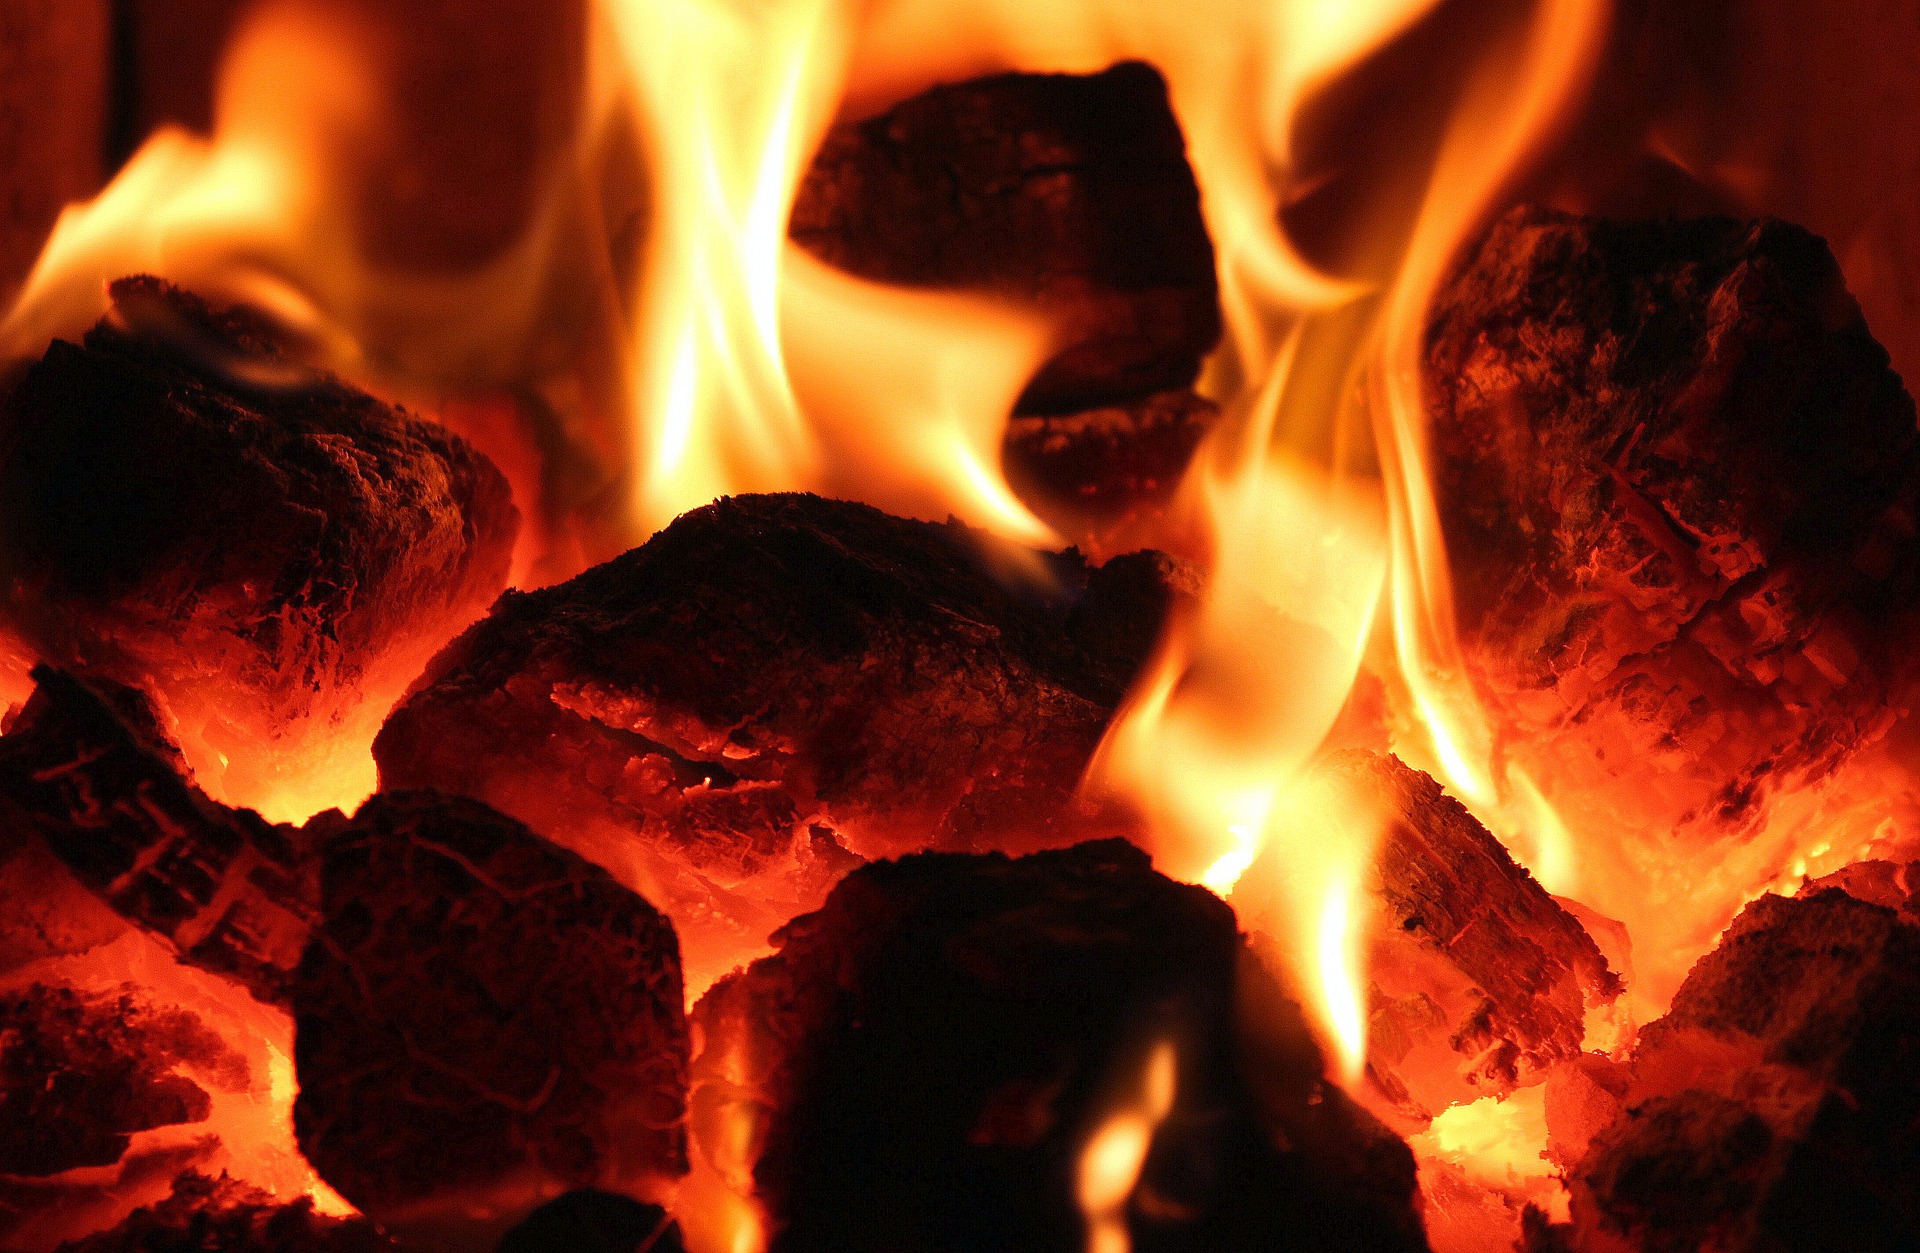 Foto: Złóż deklarację dotyczącą źródeł ciepła i spalania paliw.